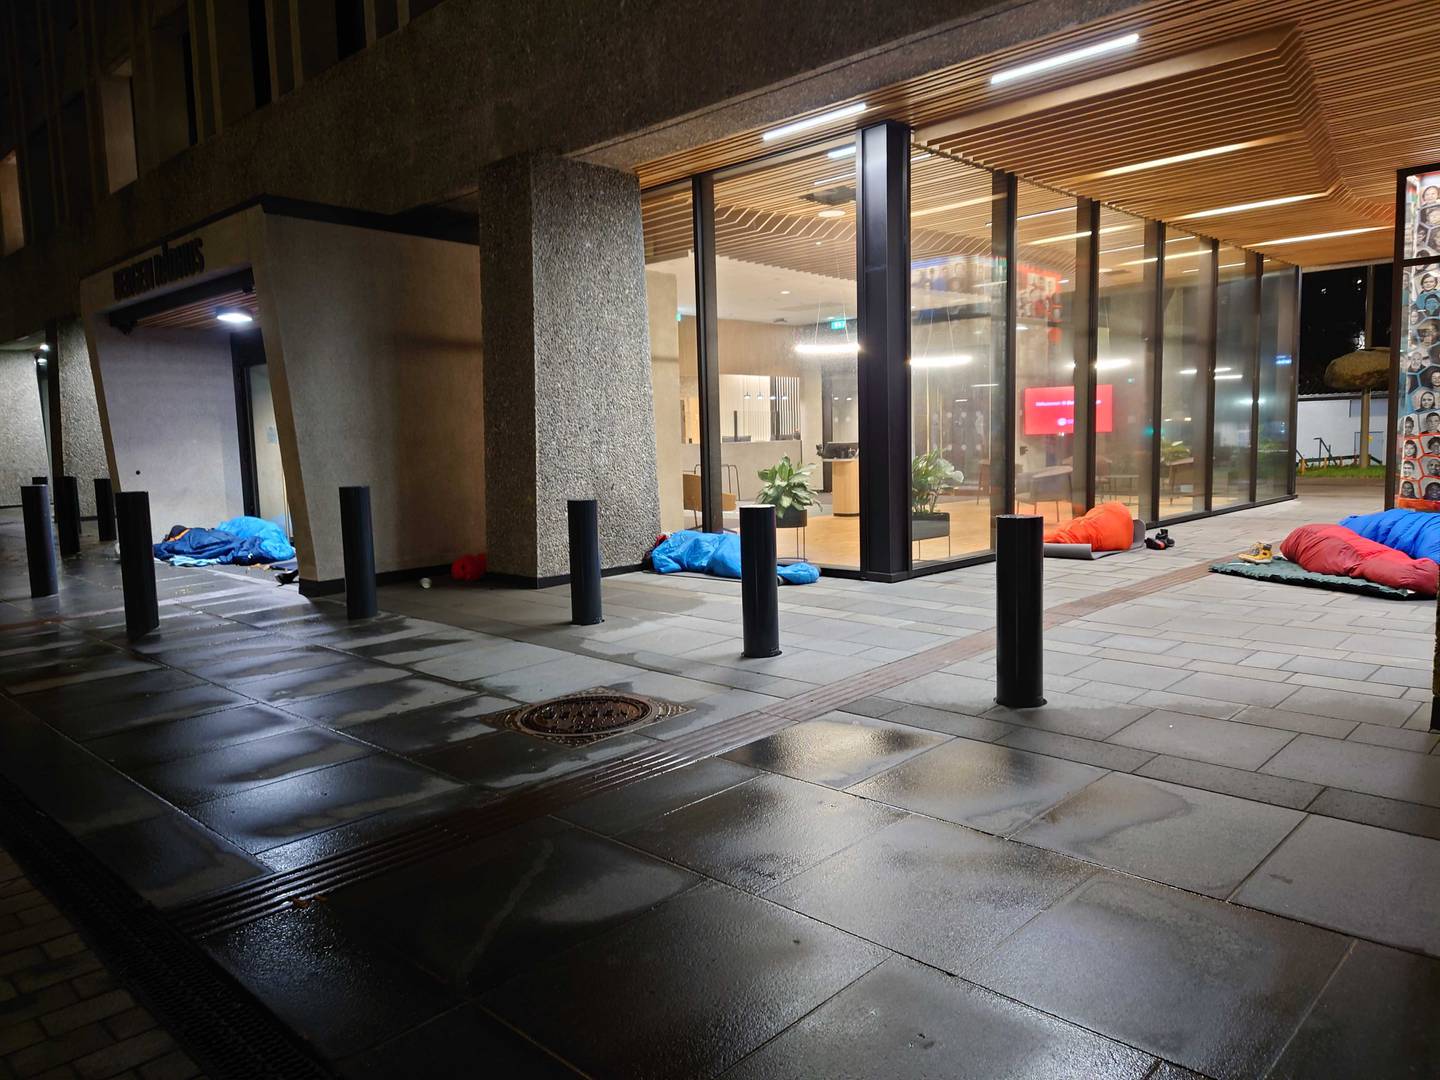 Rumenske hjemløse sover på gaten for første gang etter at akuttovernattingen ble nedlagt. De sov utenfor rådhuset i Bergen.